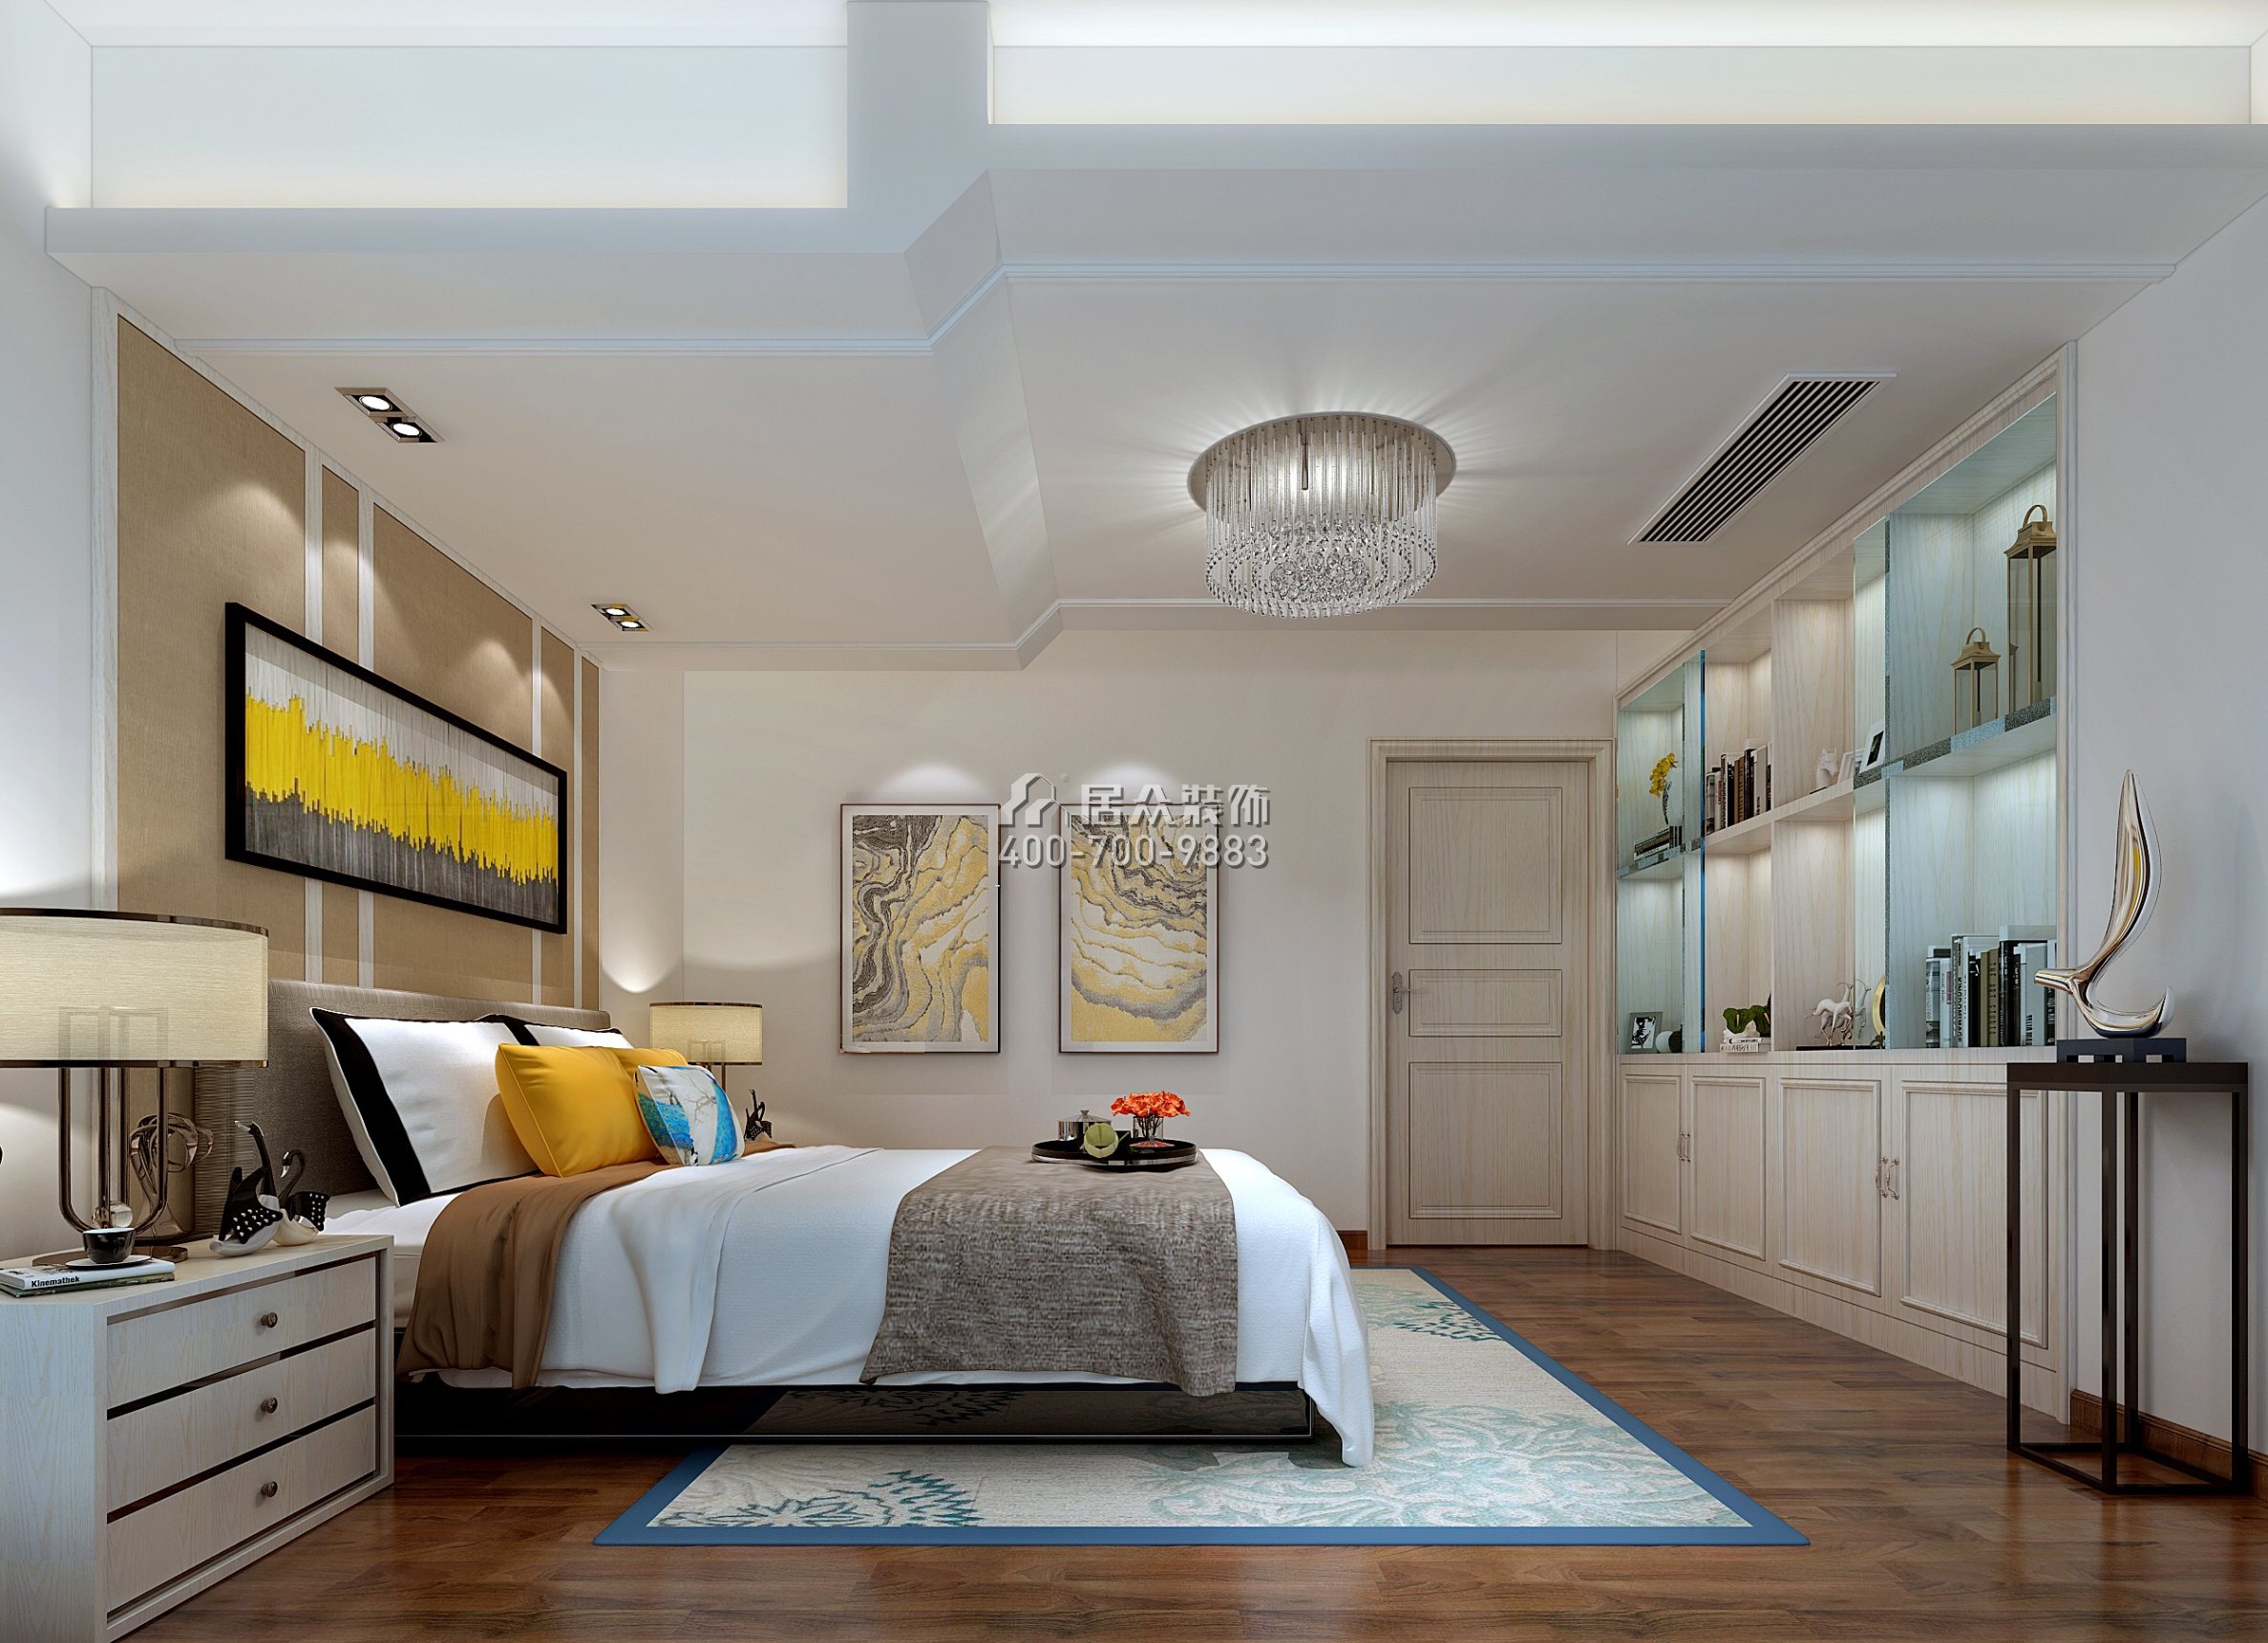 中信凯旋城三期600平方米欧式风格别墅户型卧室装修效果图